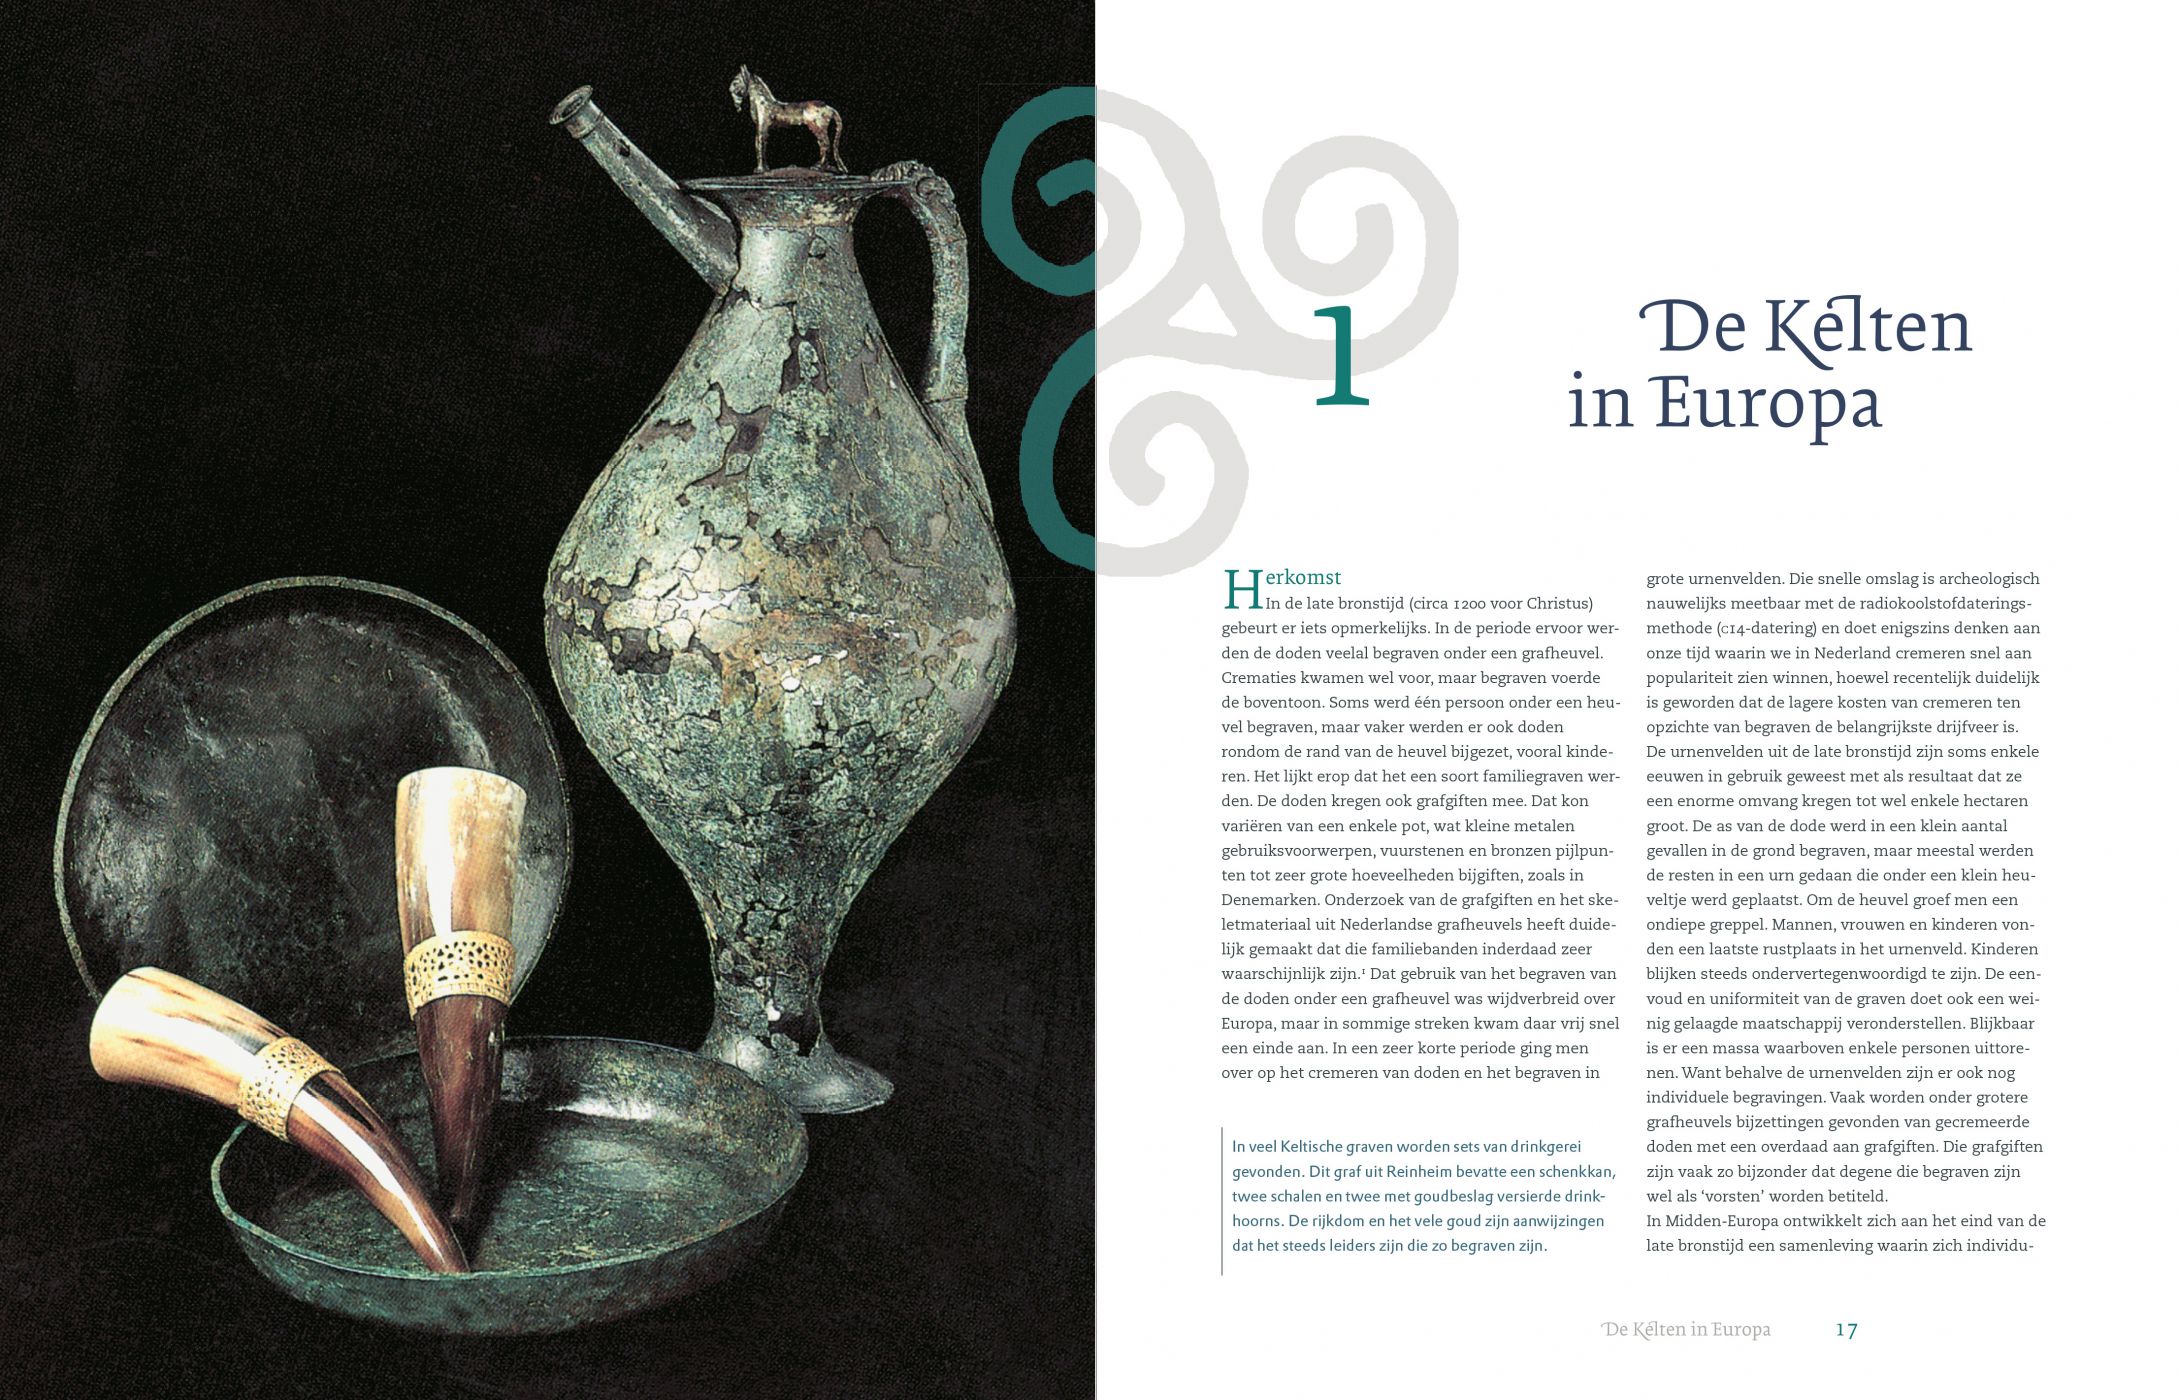 Inkijkexemplaar van het boek: <em>Op zoek naar de Kelten. Nieuwe archeologische ontdekkingen tussen Noordzee en Rijn</em> - © Uitgeverij Matrijs